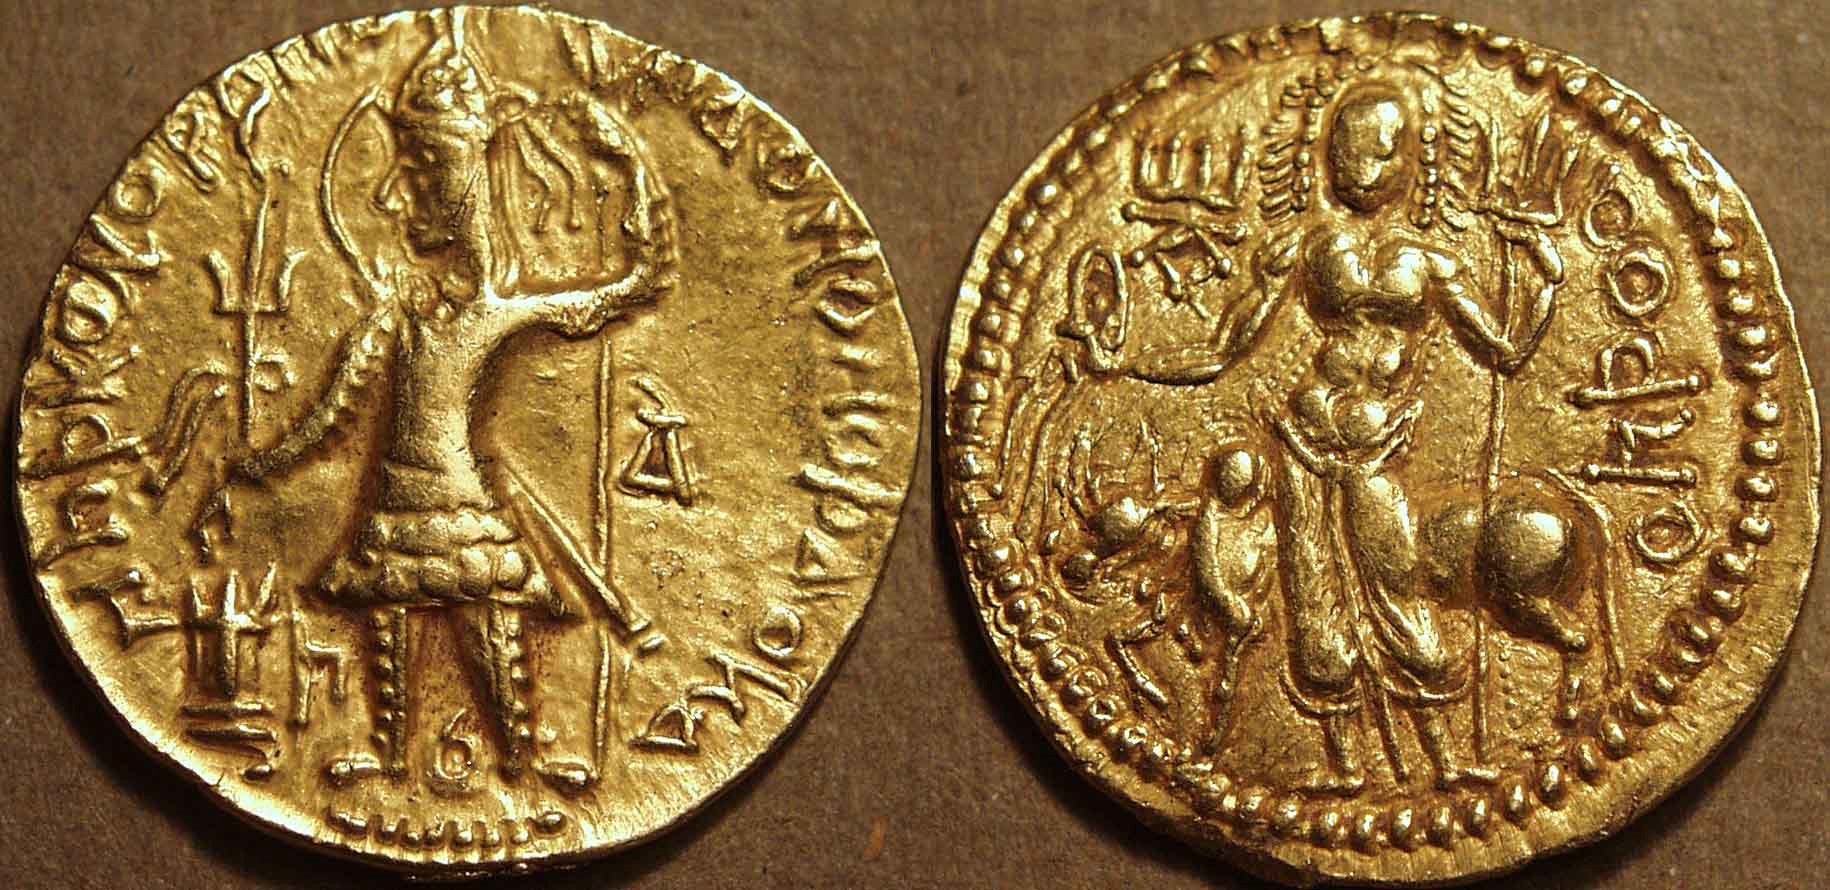 Shiva & Nandi Inspired Gold Coins